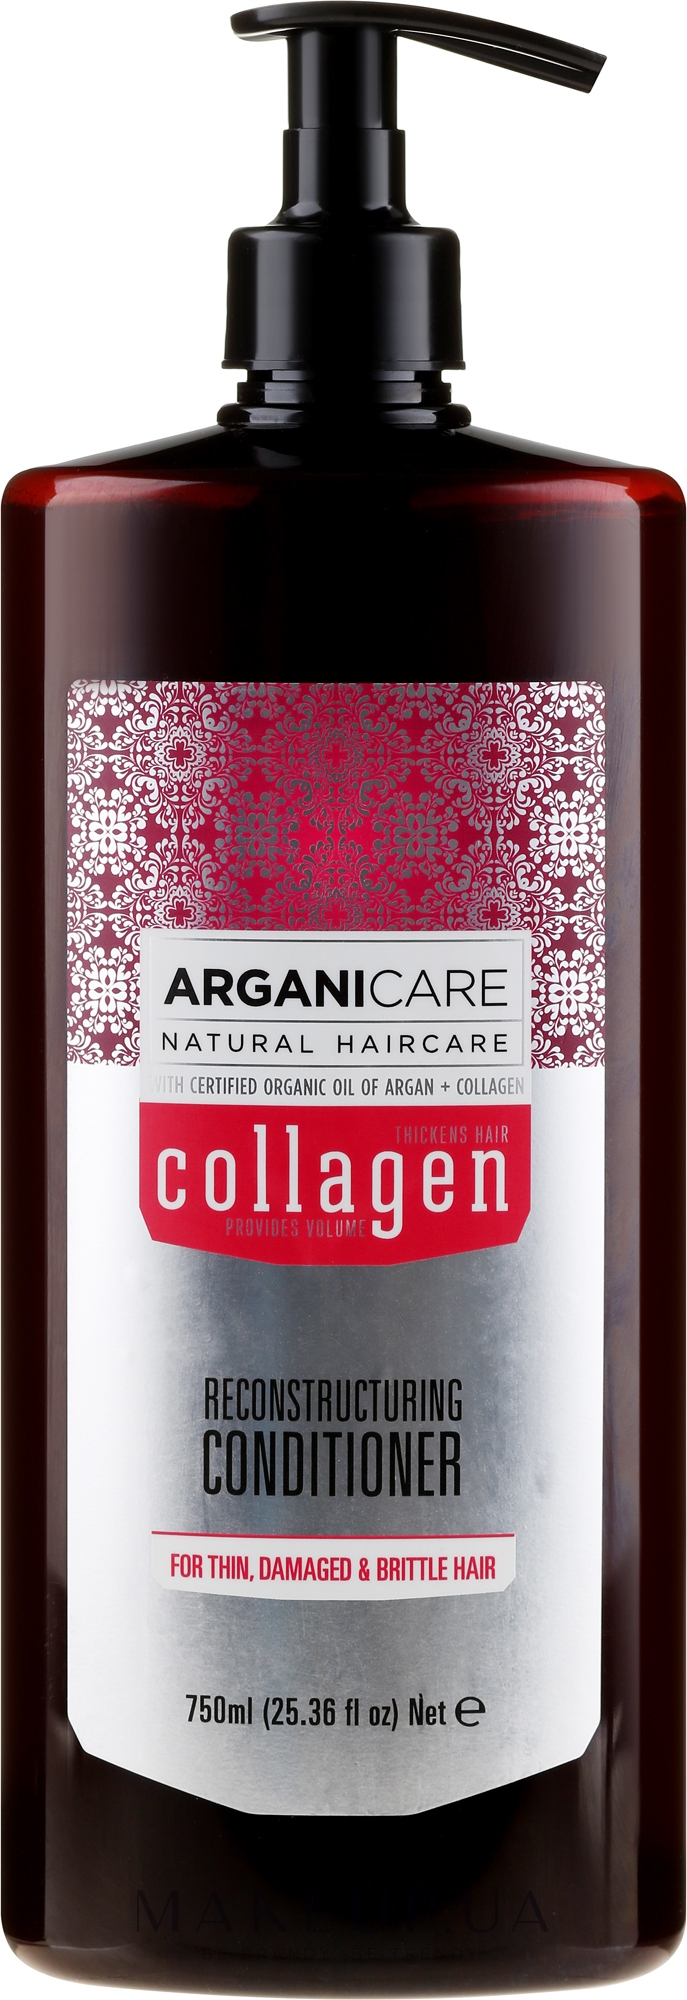 Кондиционер для волос с коллагеном - Arganicare Collagen Reconstructuring Conditioner  — фото 750ml